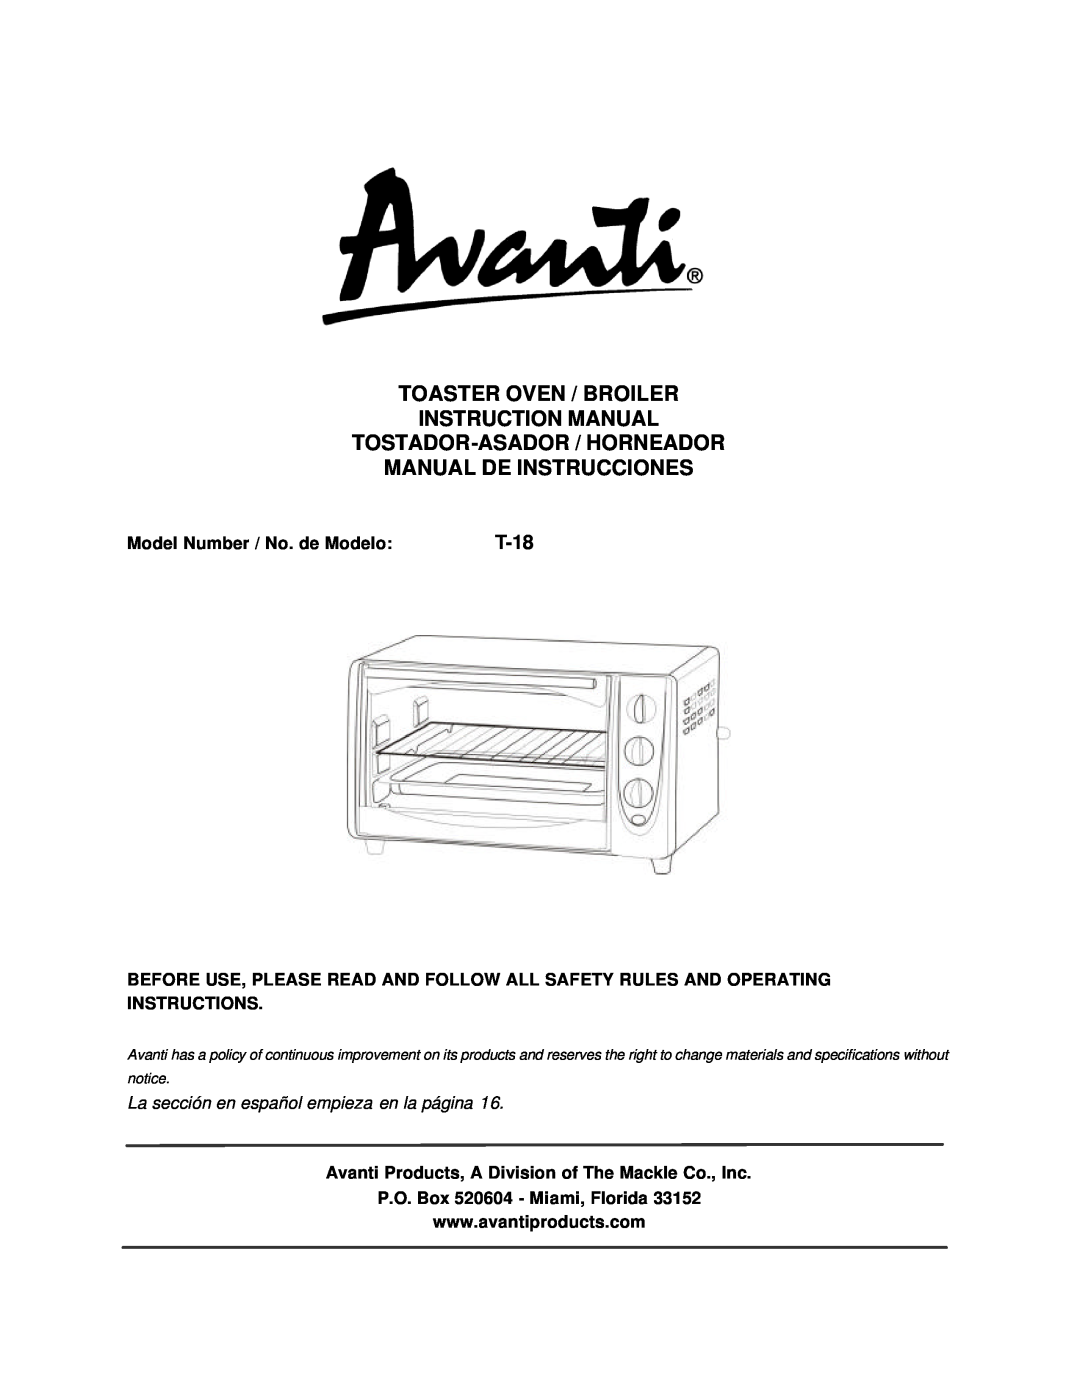 Avanti T-18 instruction manual Model Number / No. de Modelo, La sección en español empieza en la página 